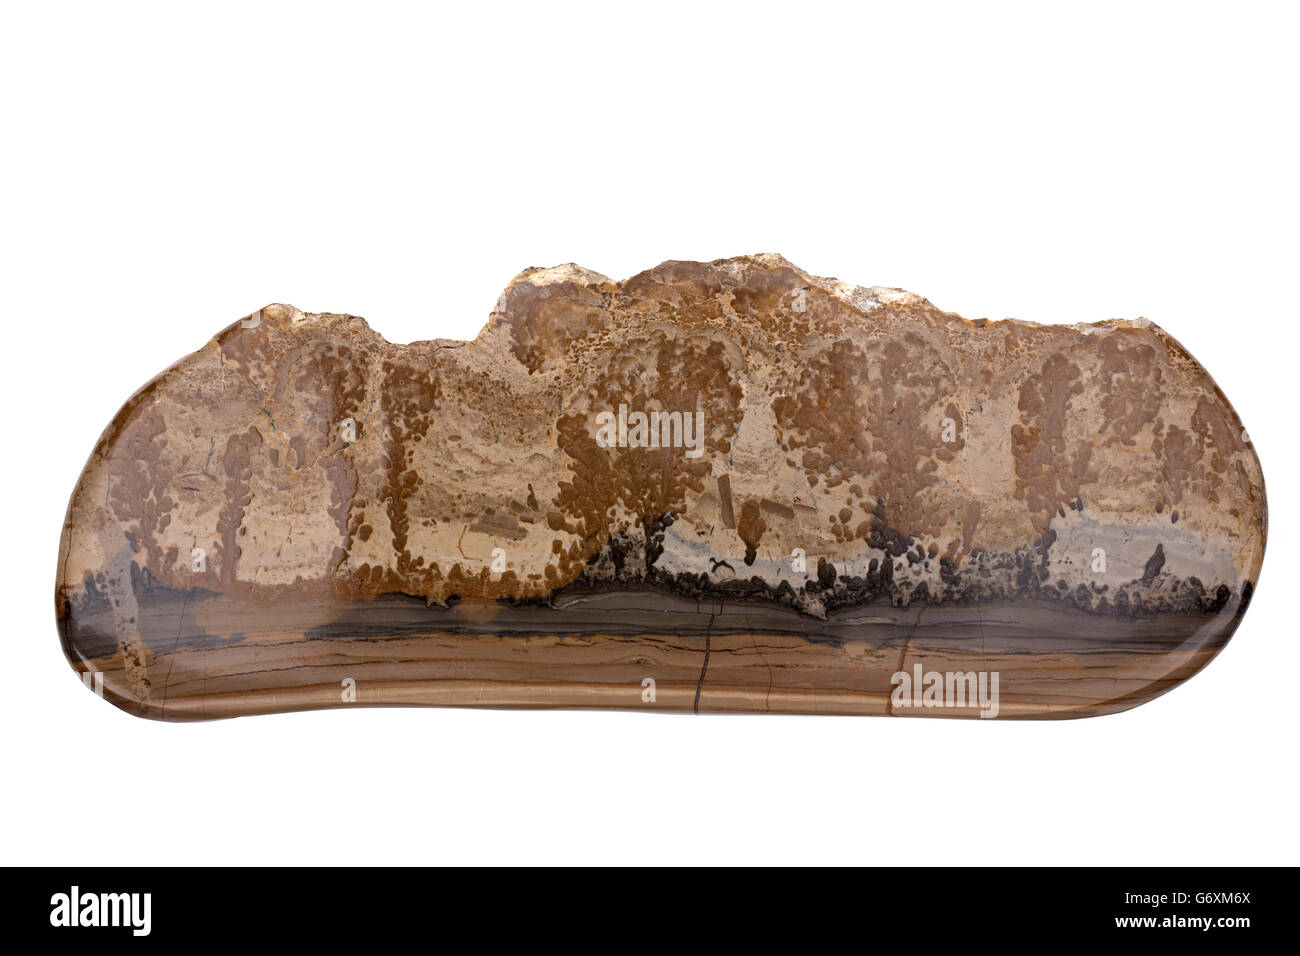 Cotham Marble oder Landschaft Marmor ist eine Vielzahl von rätischen stromatolitic Kalkstein aus der Gruppe von Penarth, gefunden in Süd-Wales Stockfoto